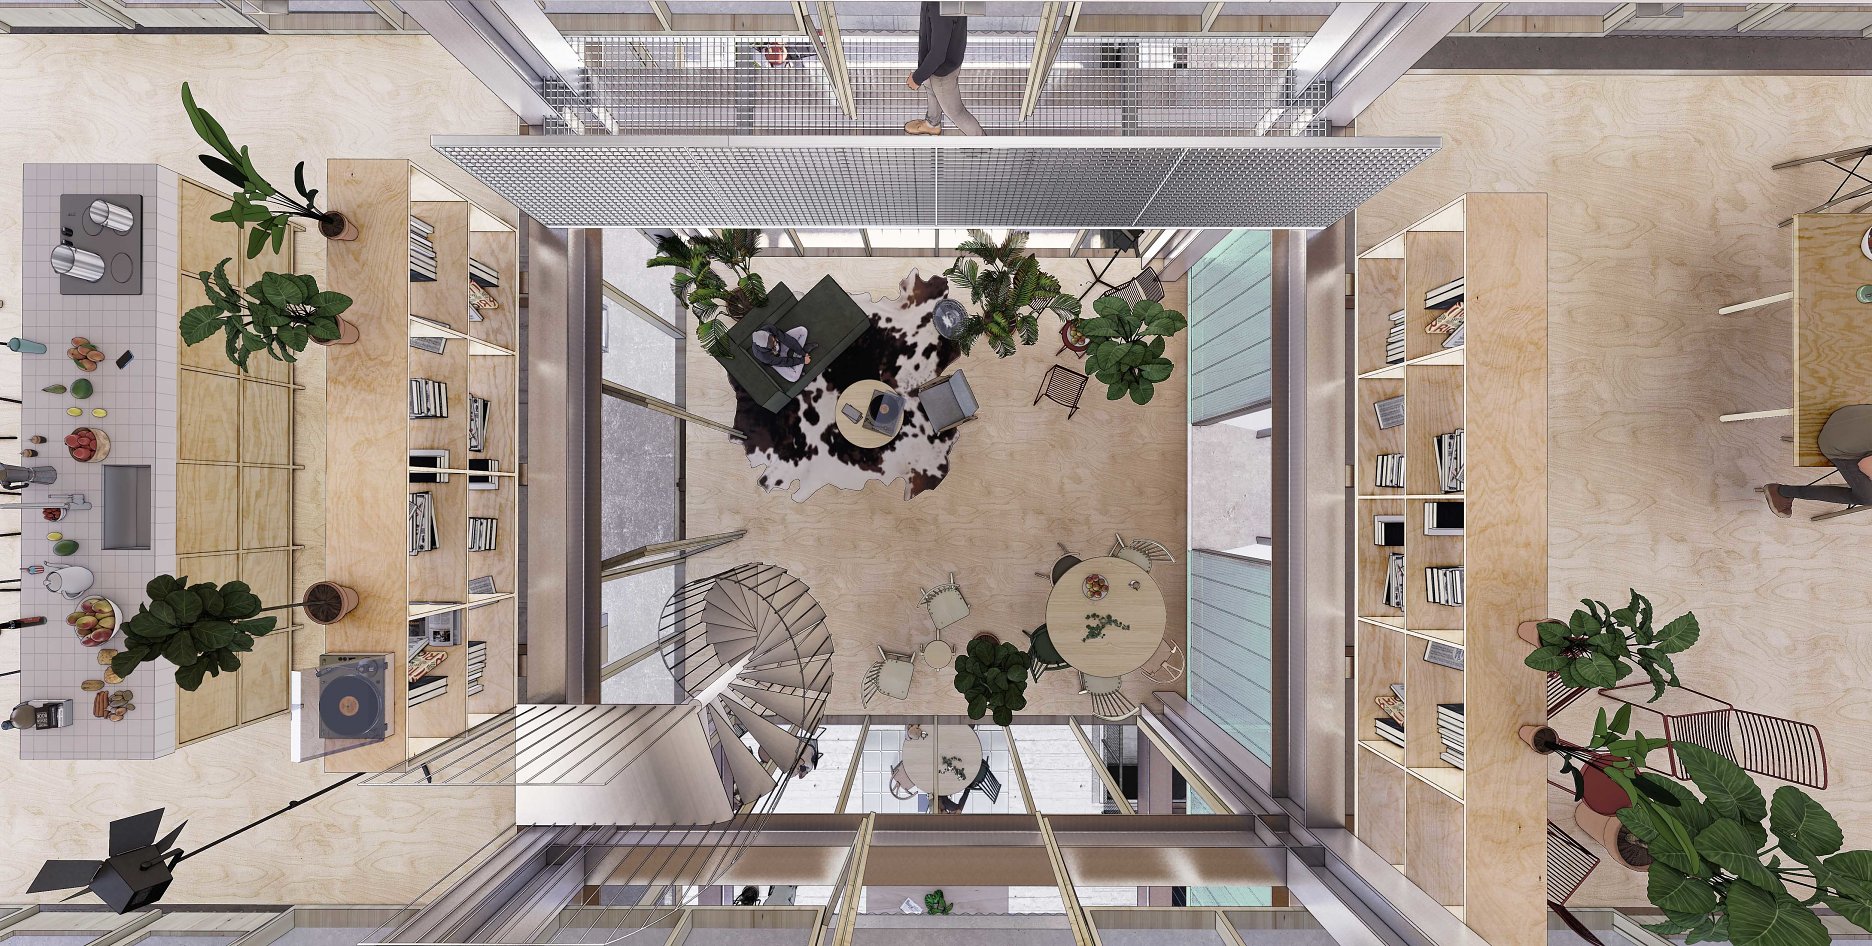 VERTICAL PALLADIO -perspektívny pohľad z coworkovej pavlače na symetrický, vertikálne prepojený priestor, vytvorený striedaním objemov.